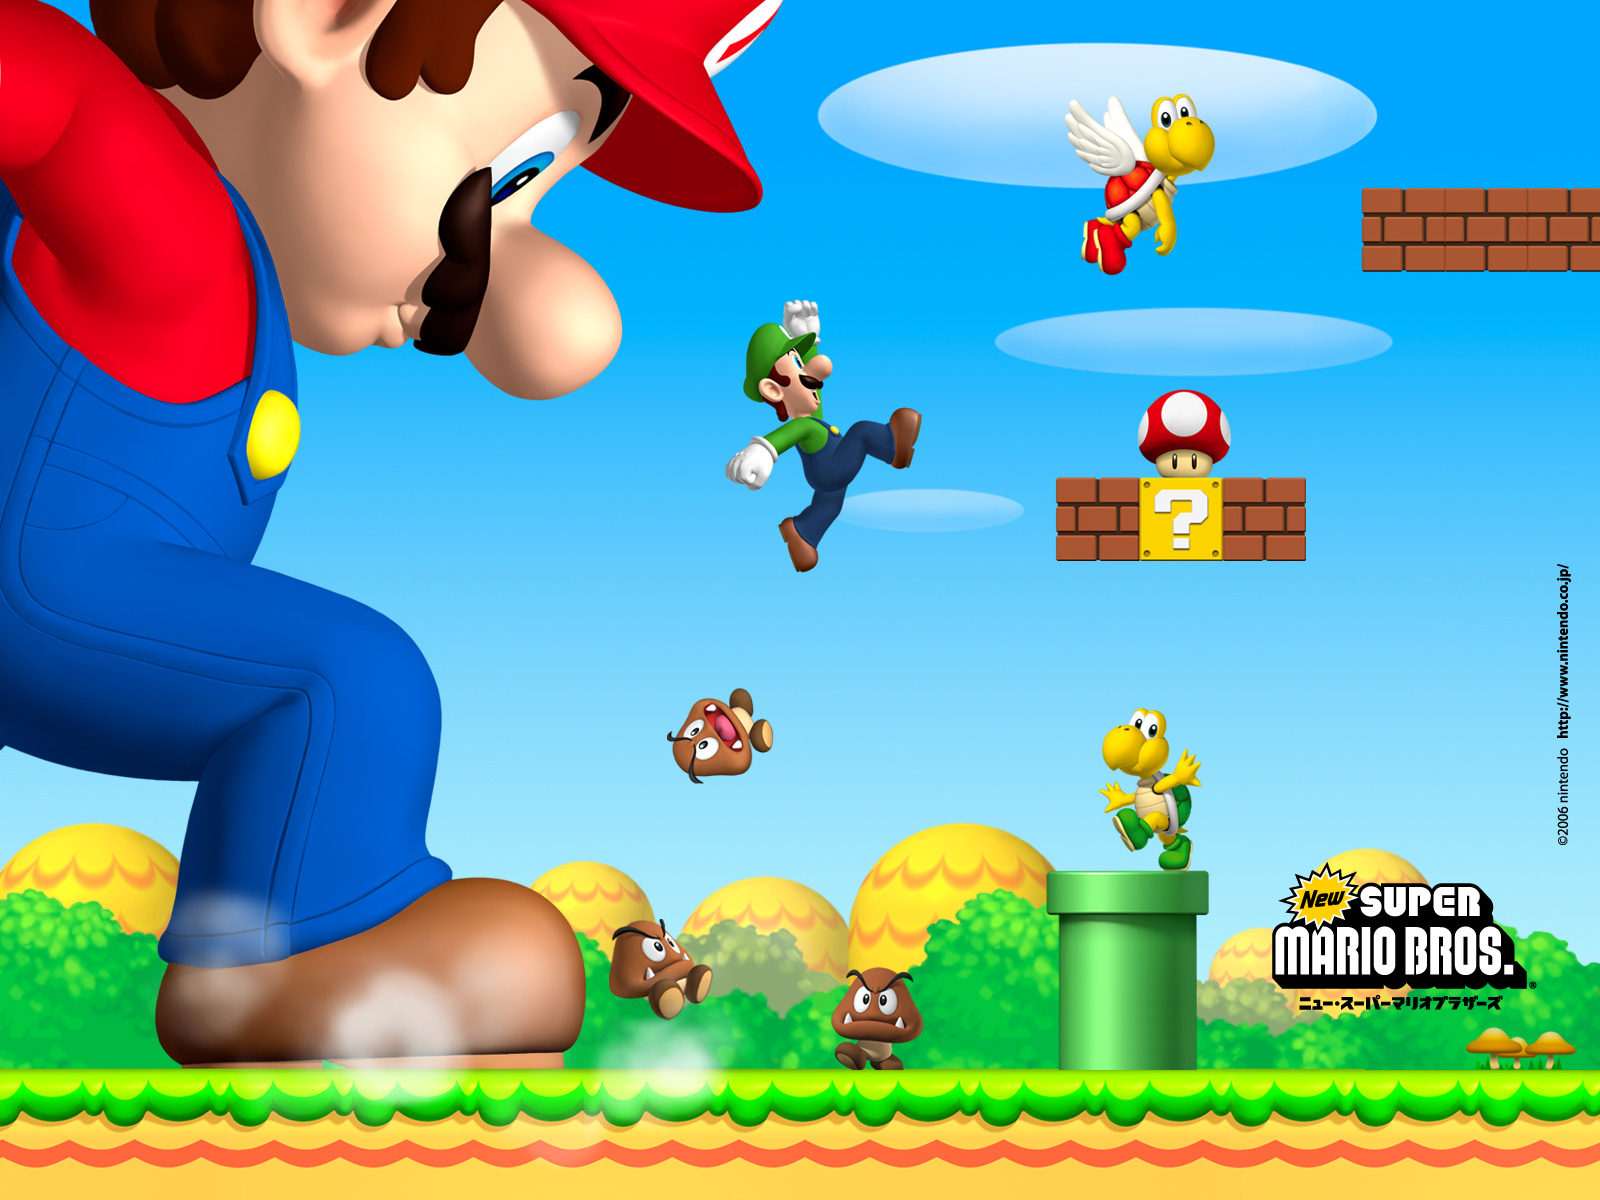 Newer mario bros download. New super Mario Bros. Игра. Игра Марио супер Марио БРОС. Супер Марио БРОС Нинтендо. Игры New super Mario Bros u.